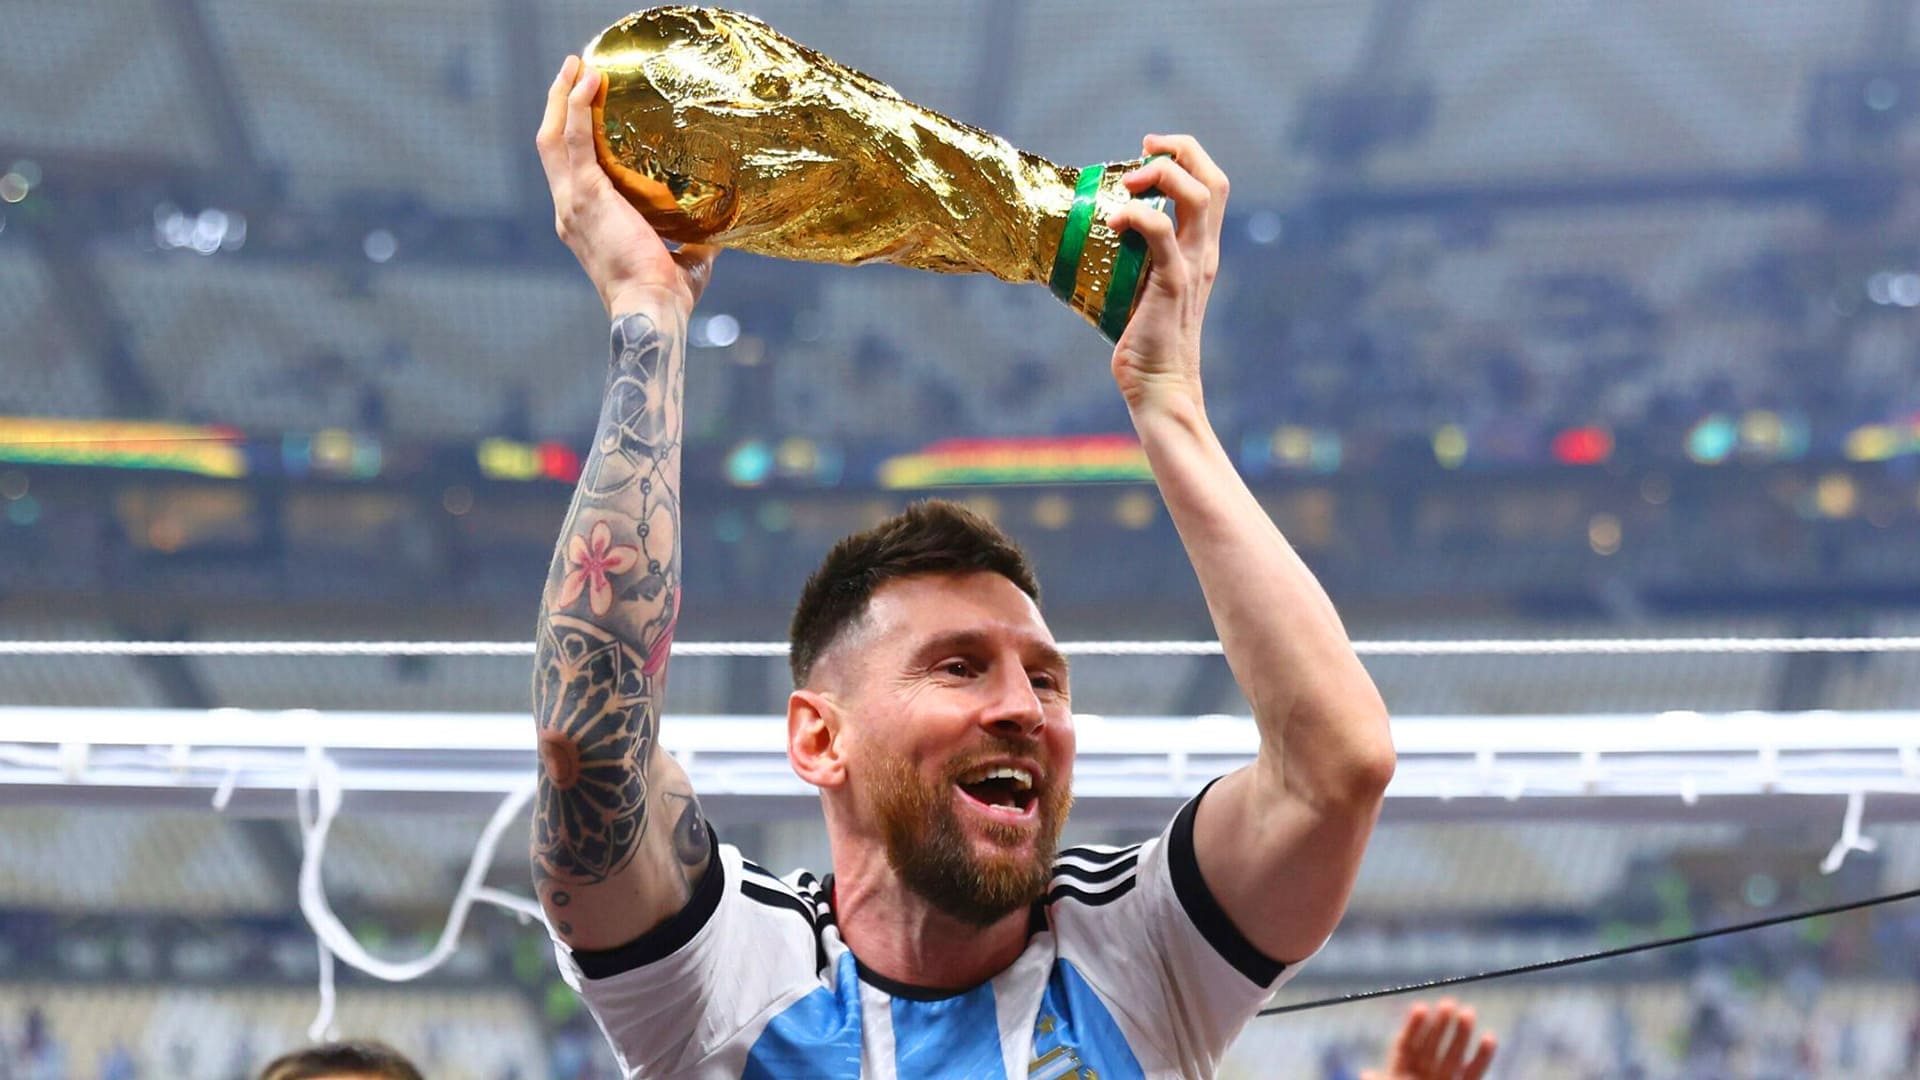 Kỷ niệm chiến thắng đội bóng quốc gia Argentina tại giải đấu bóng đá lớn nhất thế giới với hình nền Messi lifting World Cup độc đáo và ấn tượng. Những khoảnh khắc này sẽ làm bạn cảm thấy như đang ở ngay trung tâm của sự kiện quan trọng này.